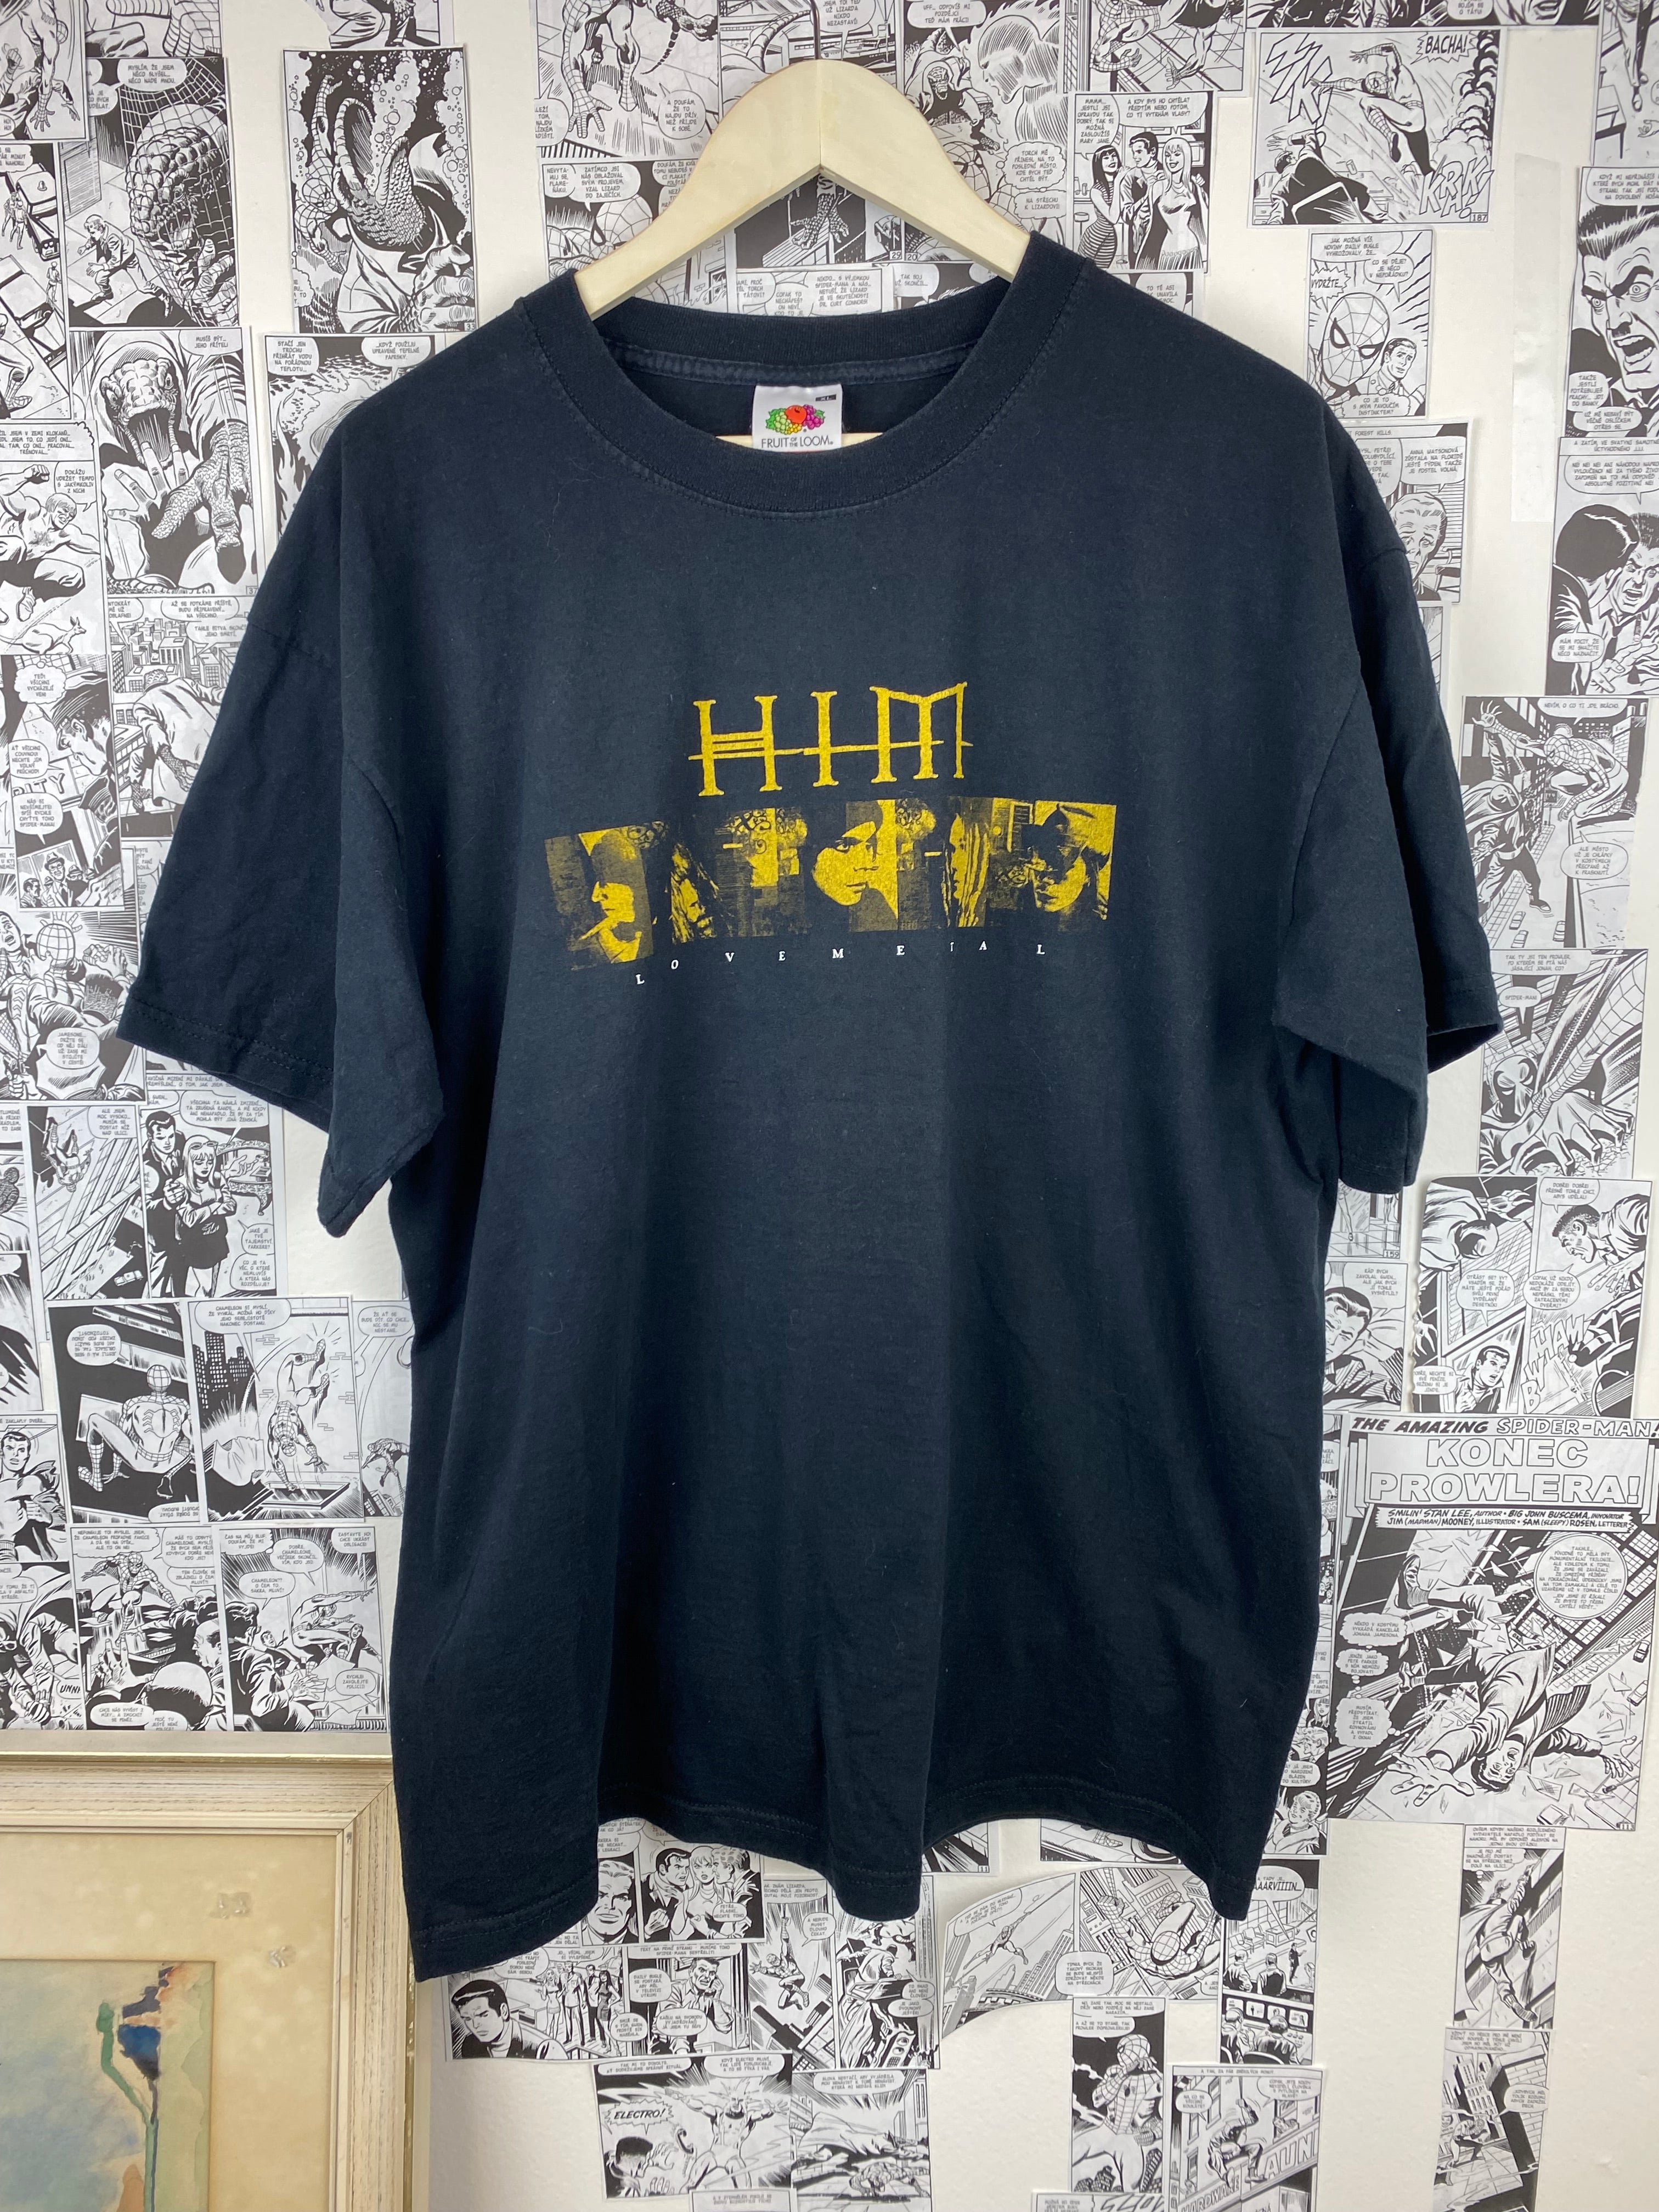 Vintage HIM “Lovemetal” t-shirt - size XL